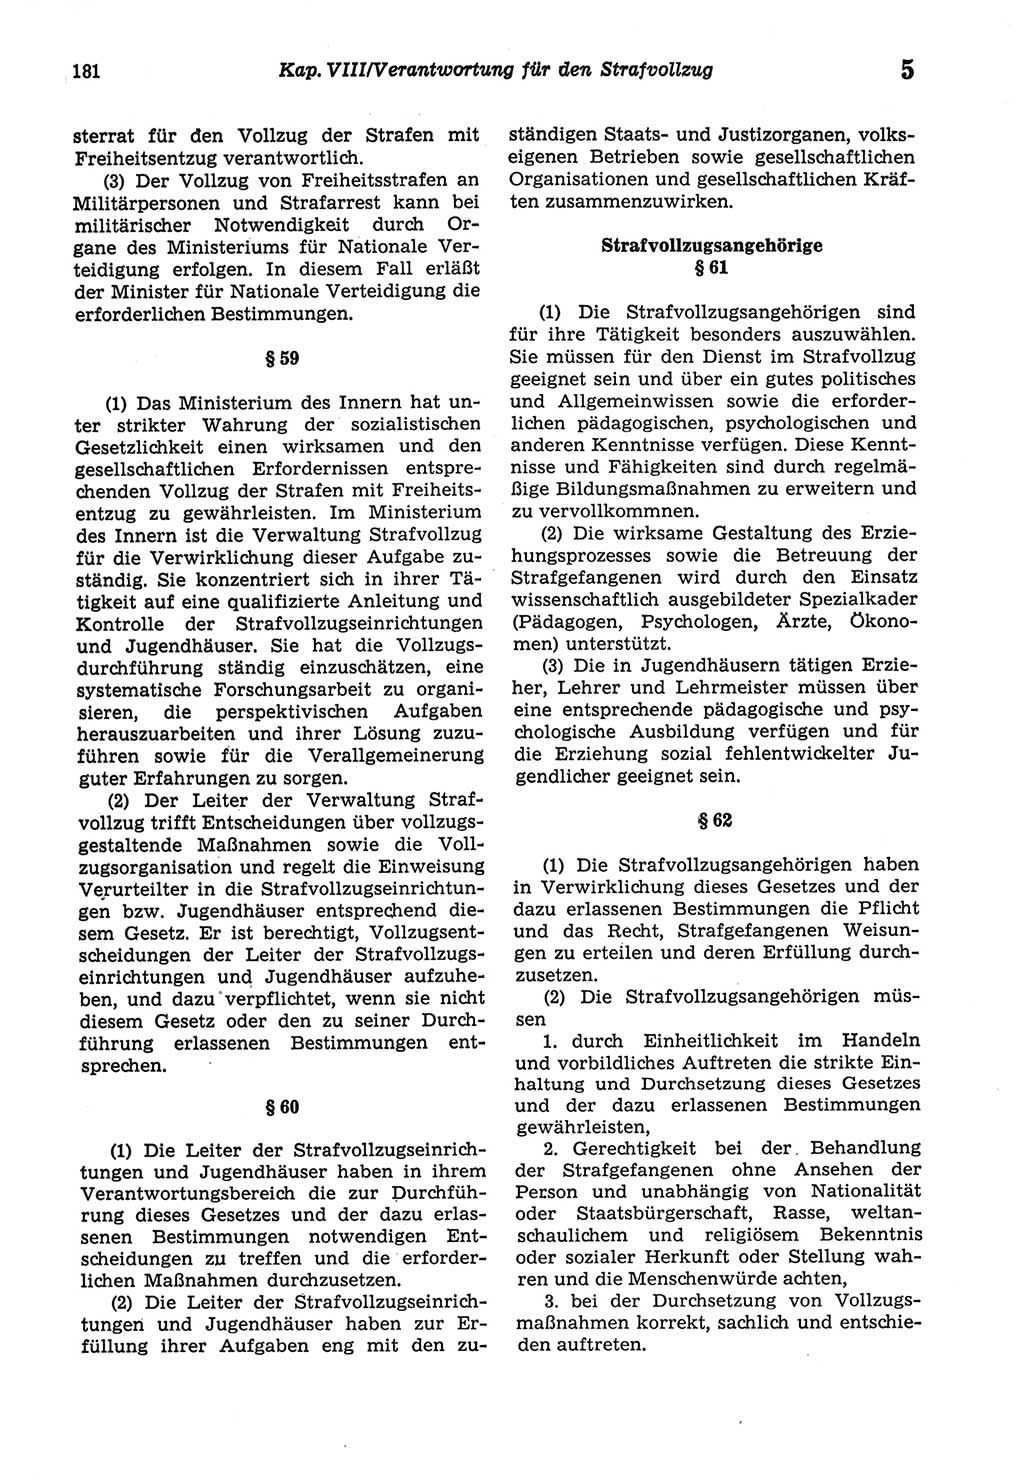 Strafprozeßordnung (StPO) der Deutschen Demokratischen Republik (DDR) sowie angrenzende Gesetze und Bestimmungen 1977, Seite 181 (StPO DDR Ges. Best. 1977, S. 181)